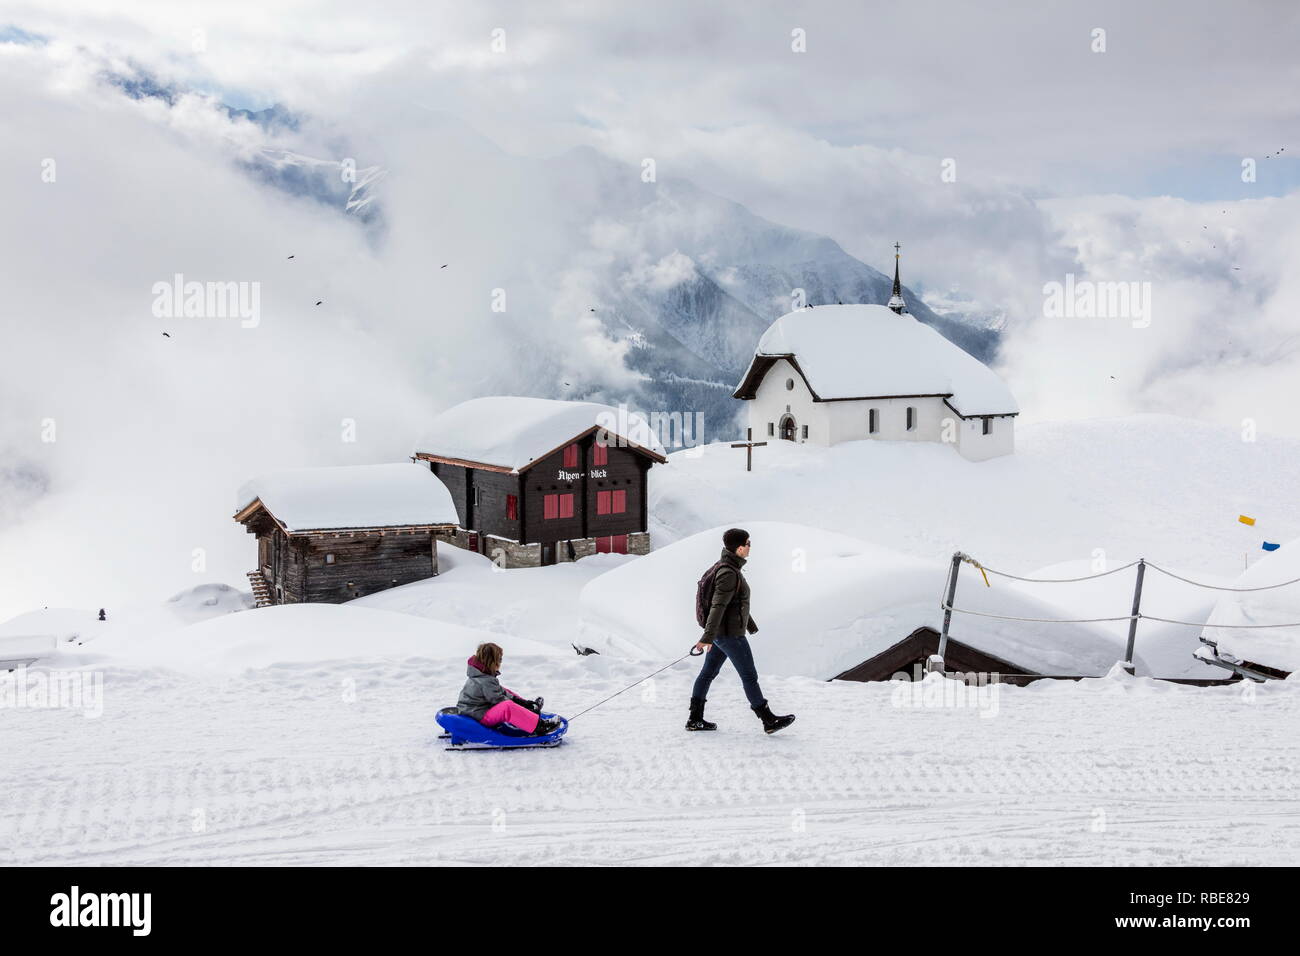 L'enfant sur une luge admire les refuges de montagne couverte de neige Bettmeralp Française, canton du Valais Suisse Europe Banque D'Images